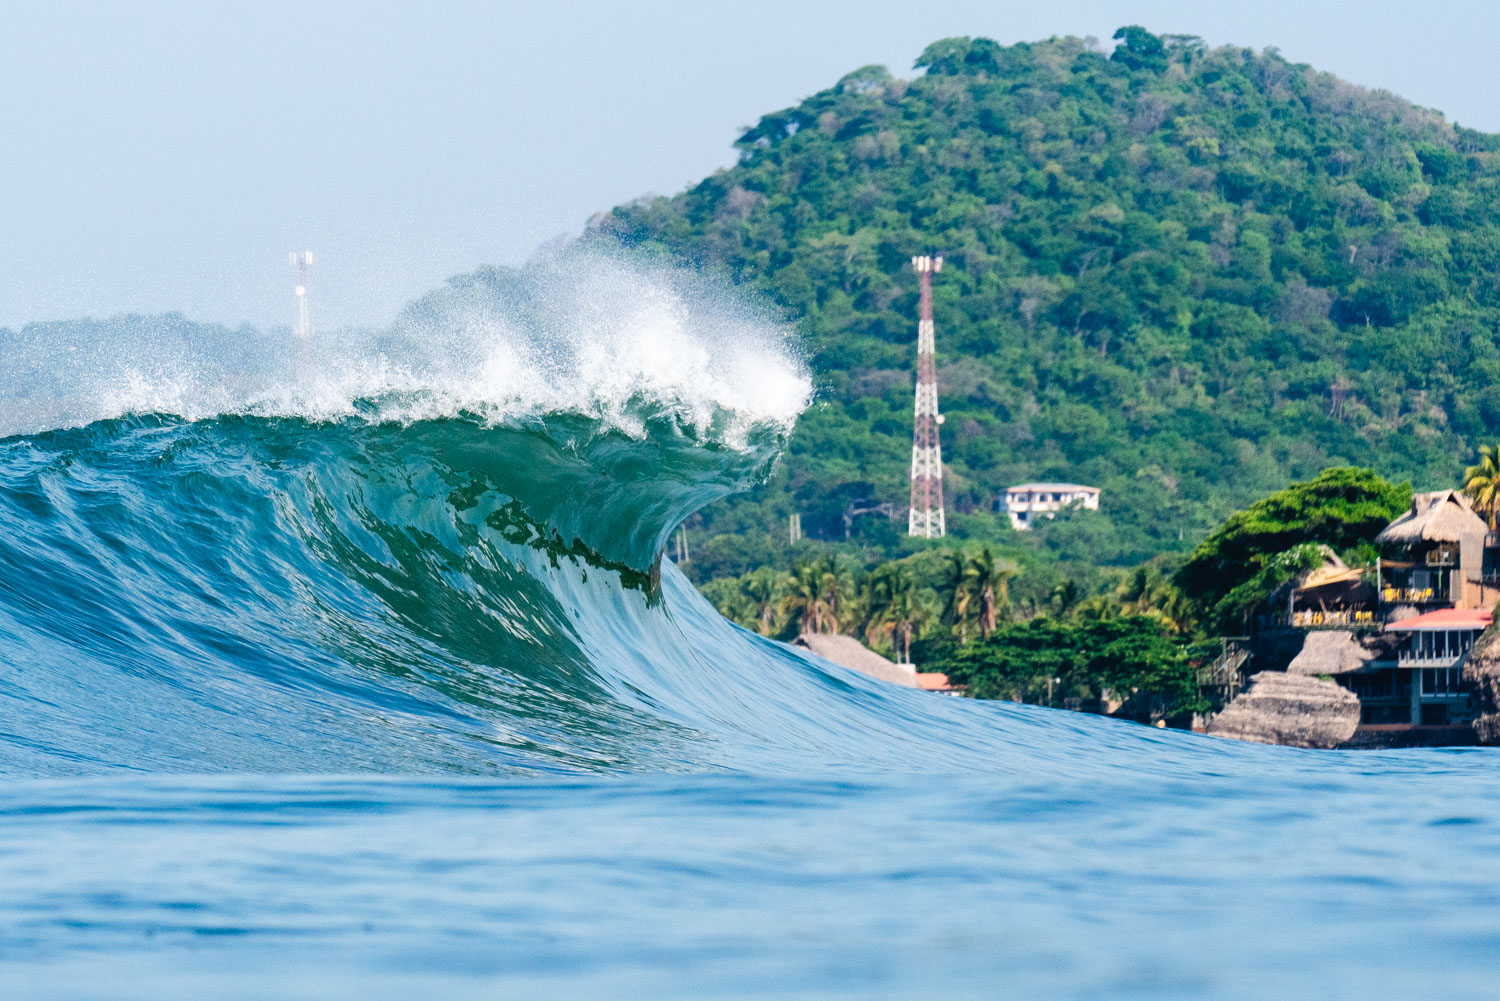 La Bocana, em El Salvador, sedia o ISA World Surfing Games 2023.